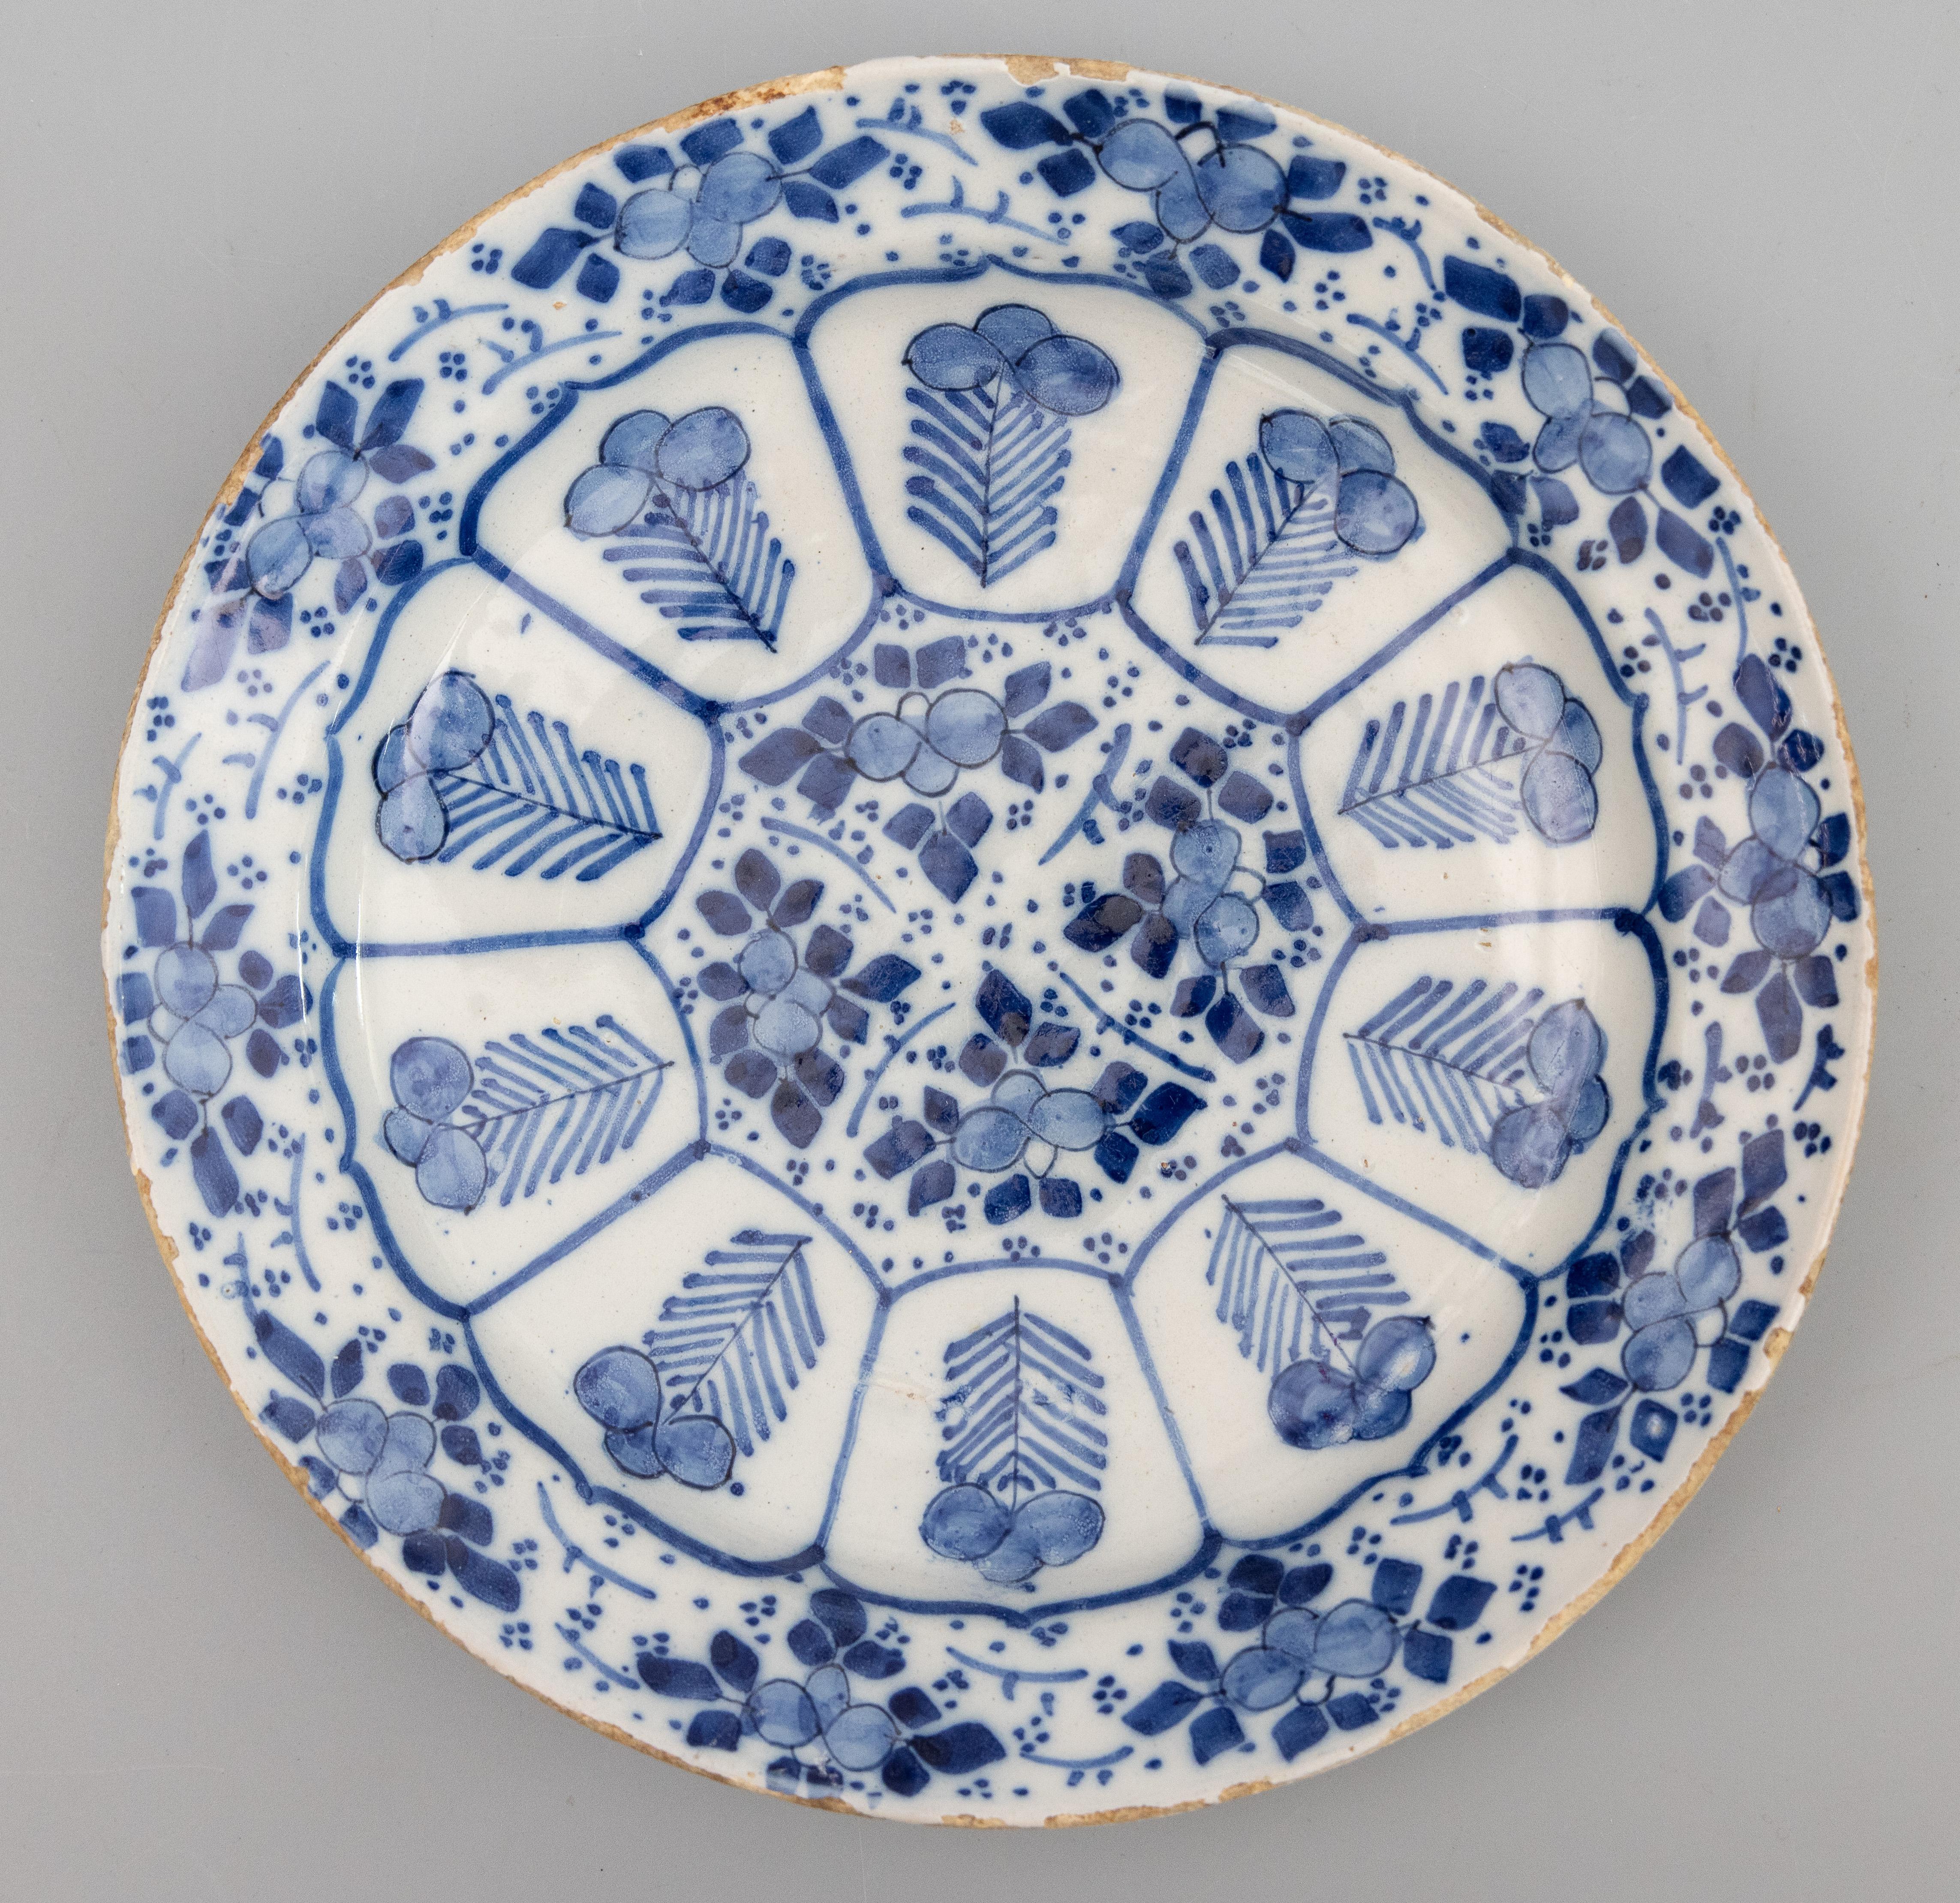 Eine schöne antike 18. Jahrhundert Dutch Delft Fayence Zinn glasiert Steingut floralen großen Teller oder Ladegerät in der Kraak-Stil, um 1750. Dieser atemberaubende Teller ist von Hand in leuchtendem Kobaltblau und Weiß bemalt und würde an einer